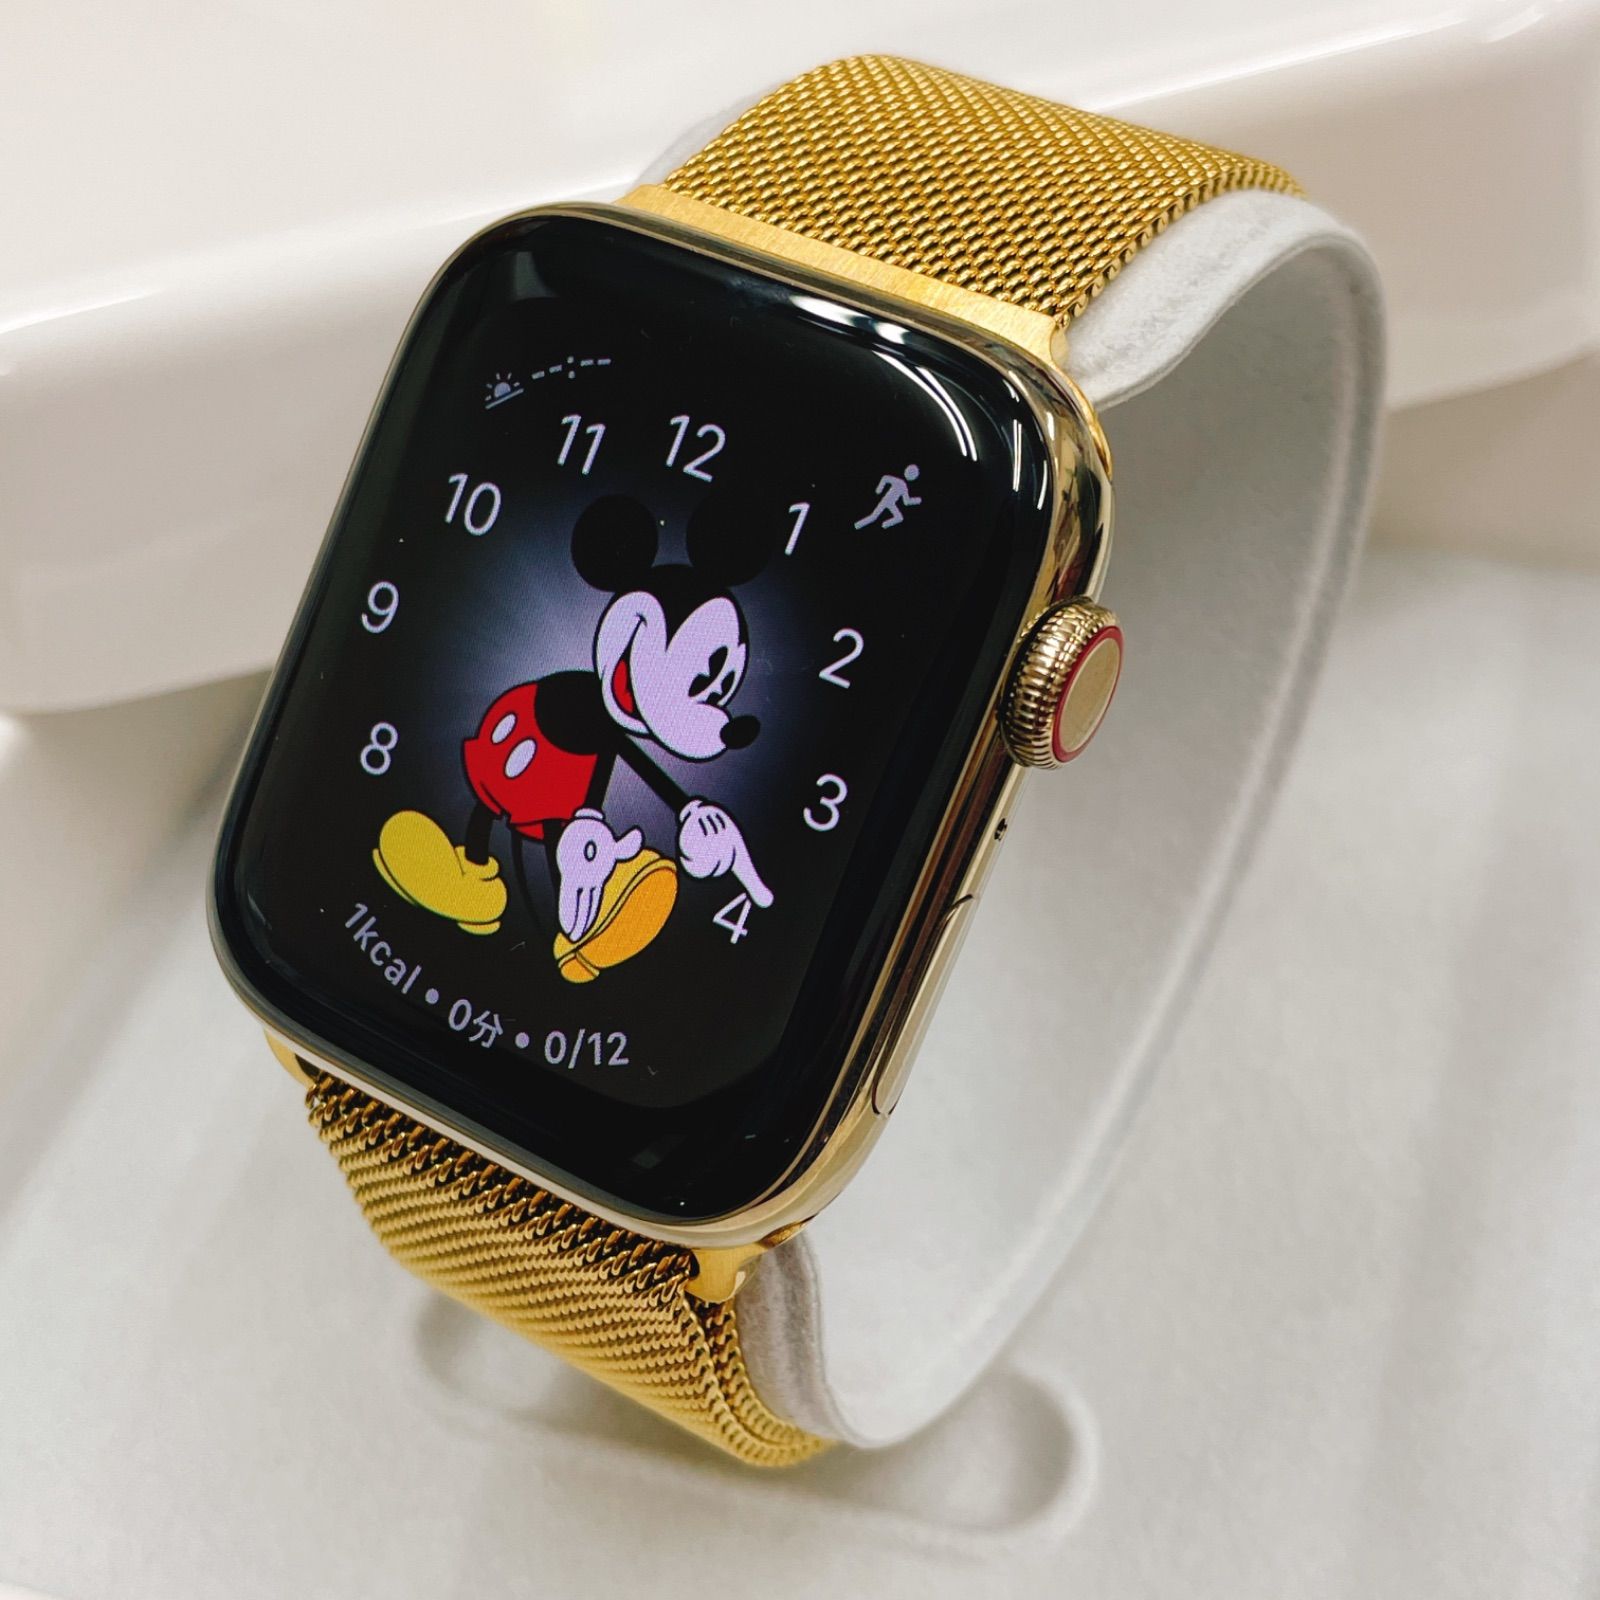 Apple Watch シリーズ6 goldステンレス アップルウォッチ 44 - メルカリ